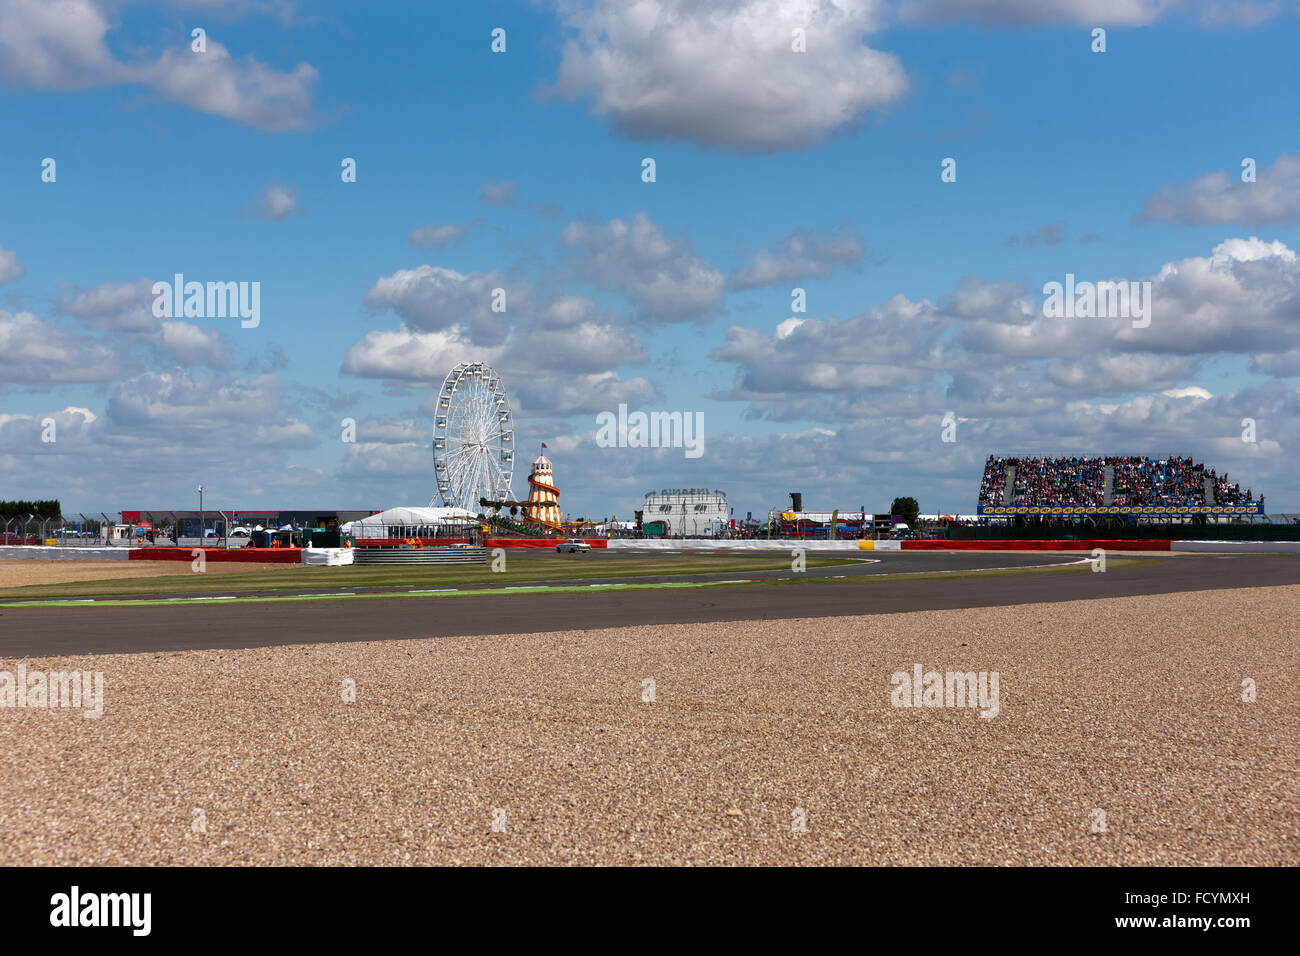 Vue grand angle de la 'boucle', au circuit automobile de Silverstone, au cours de la Classique 2015, Silverstone Banque D'Images